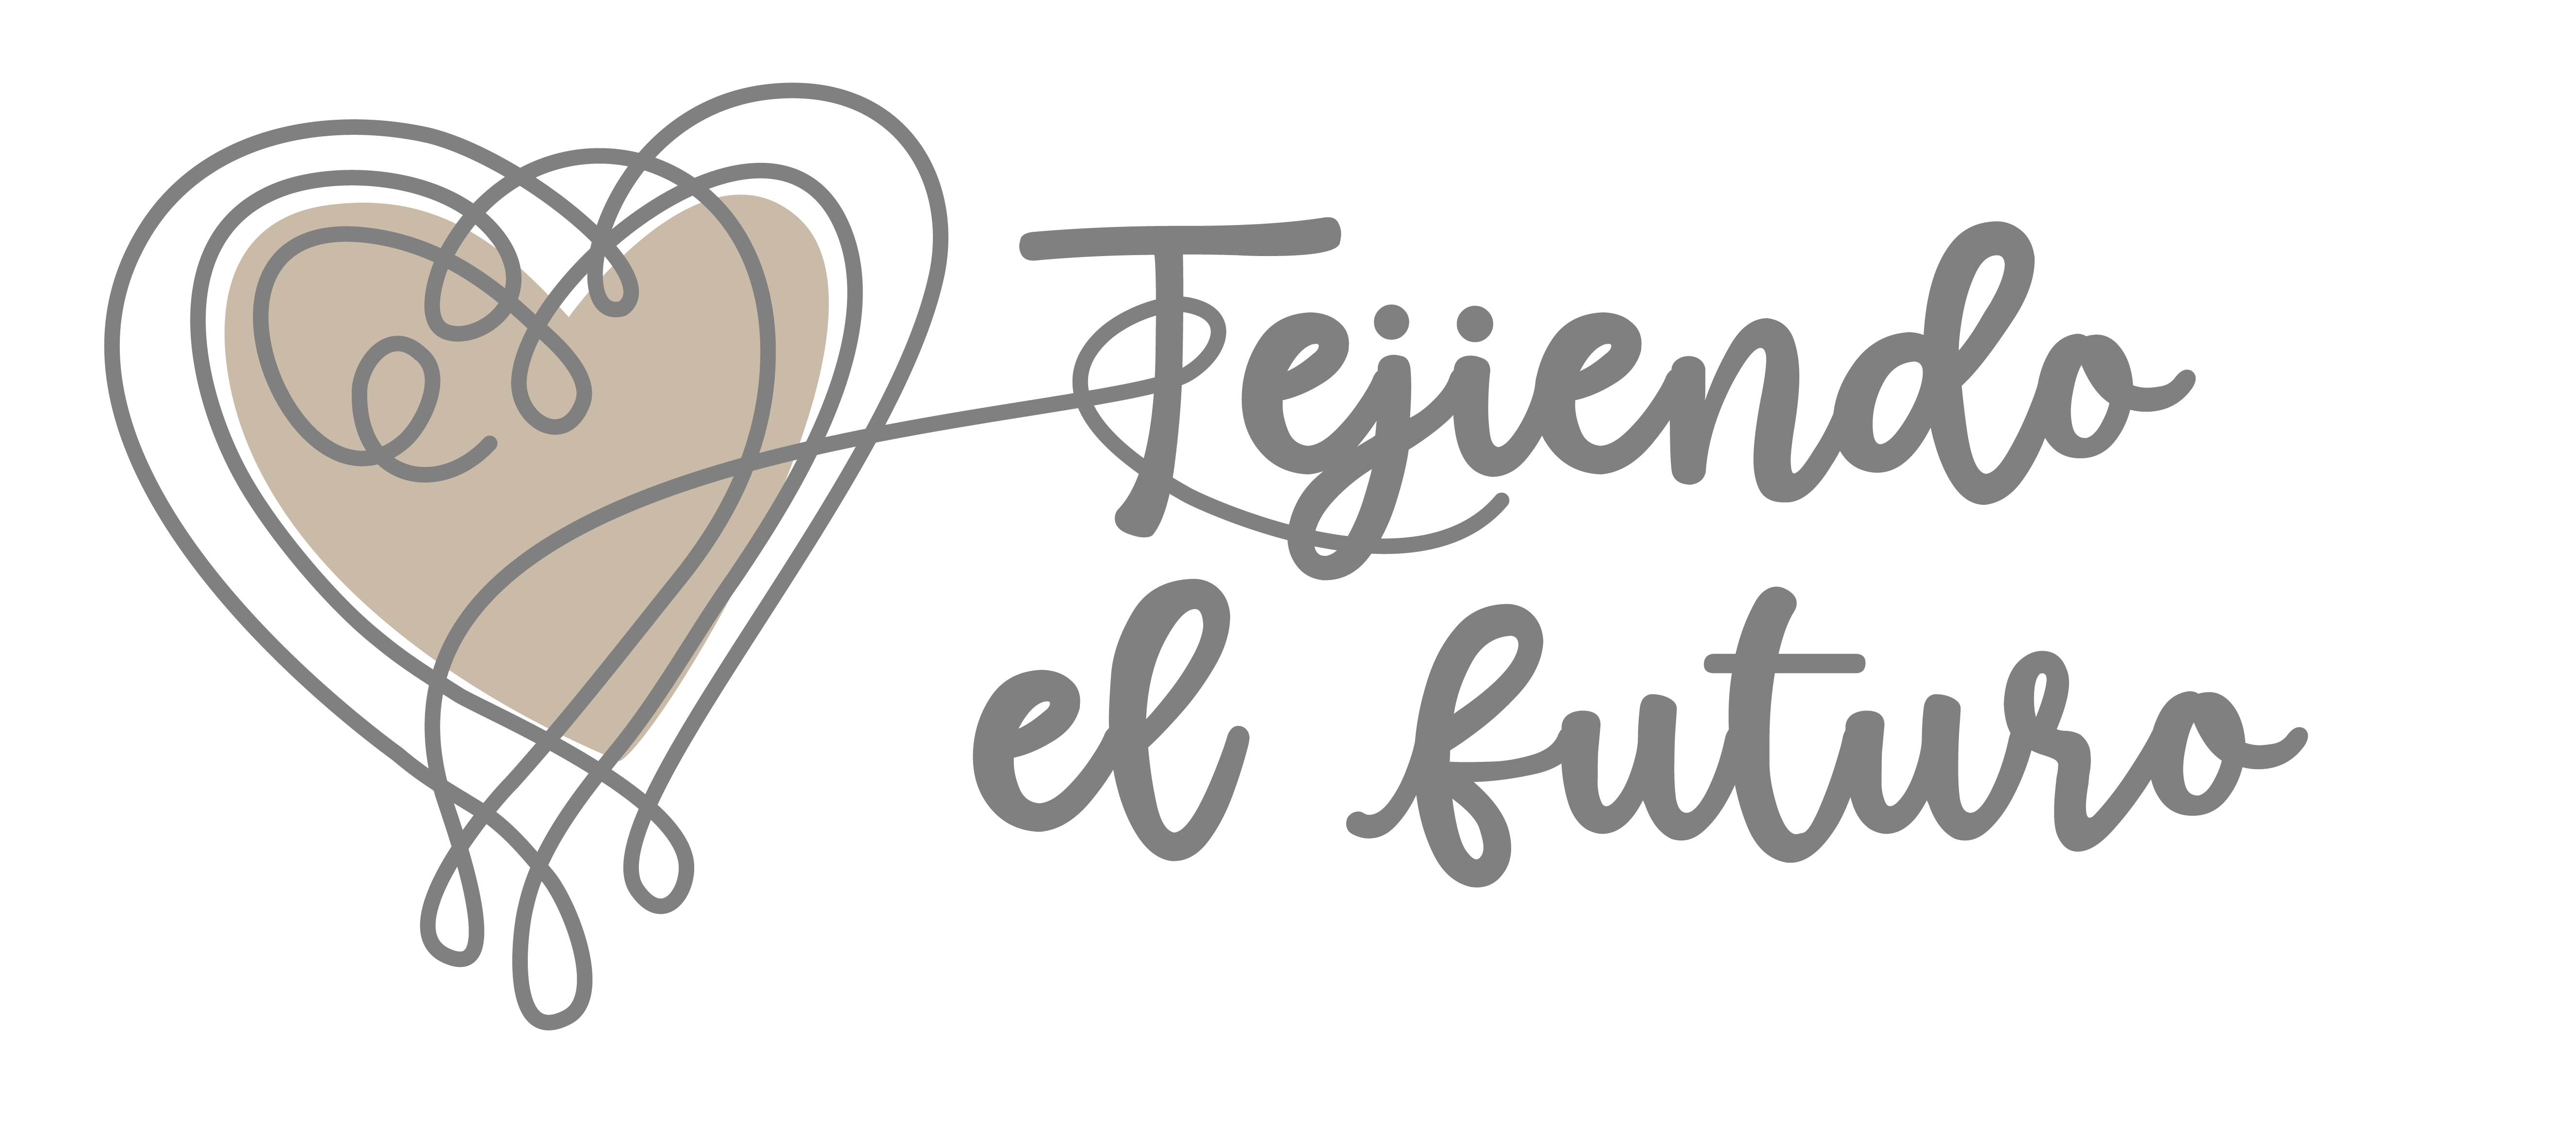 Tejiendo el Futuro es marca candidata a Premios Internacionales Marcas que Enamoran 2022